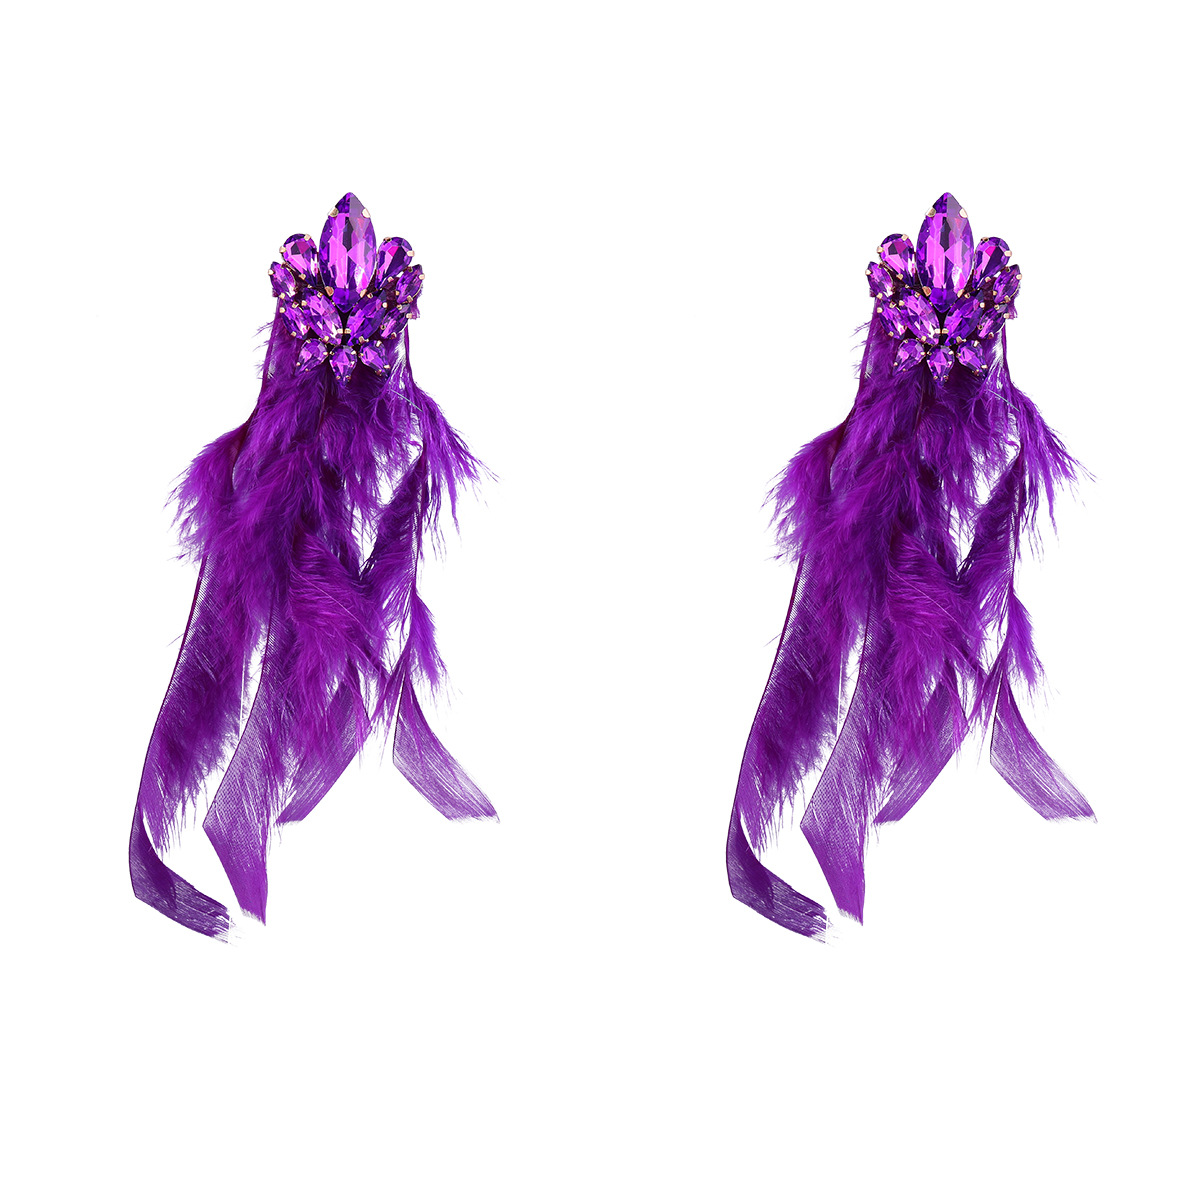 purple violet